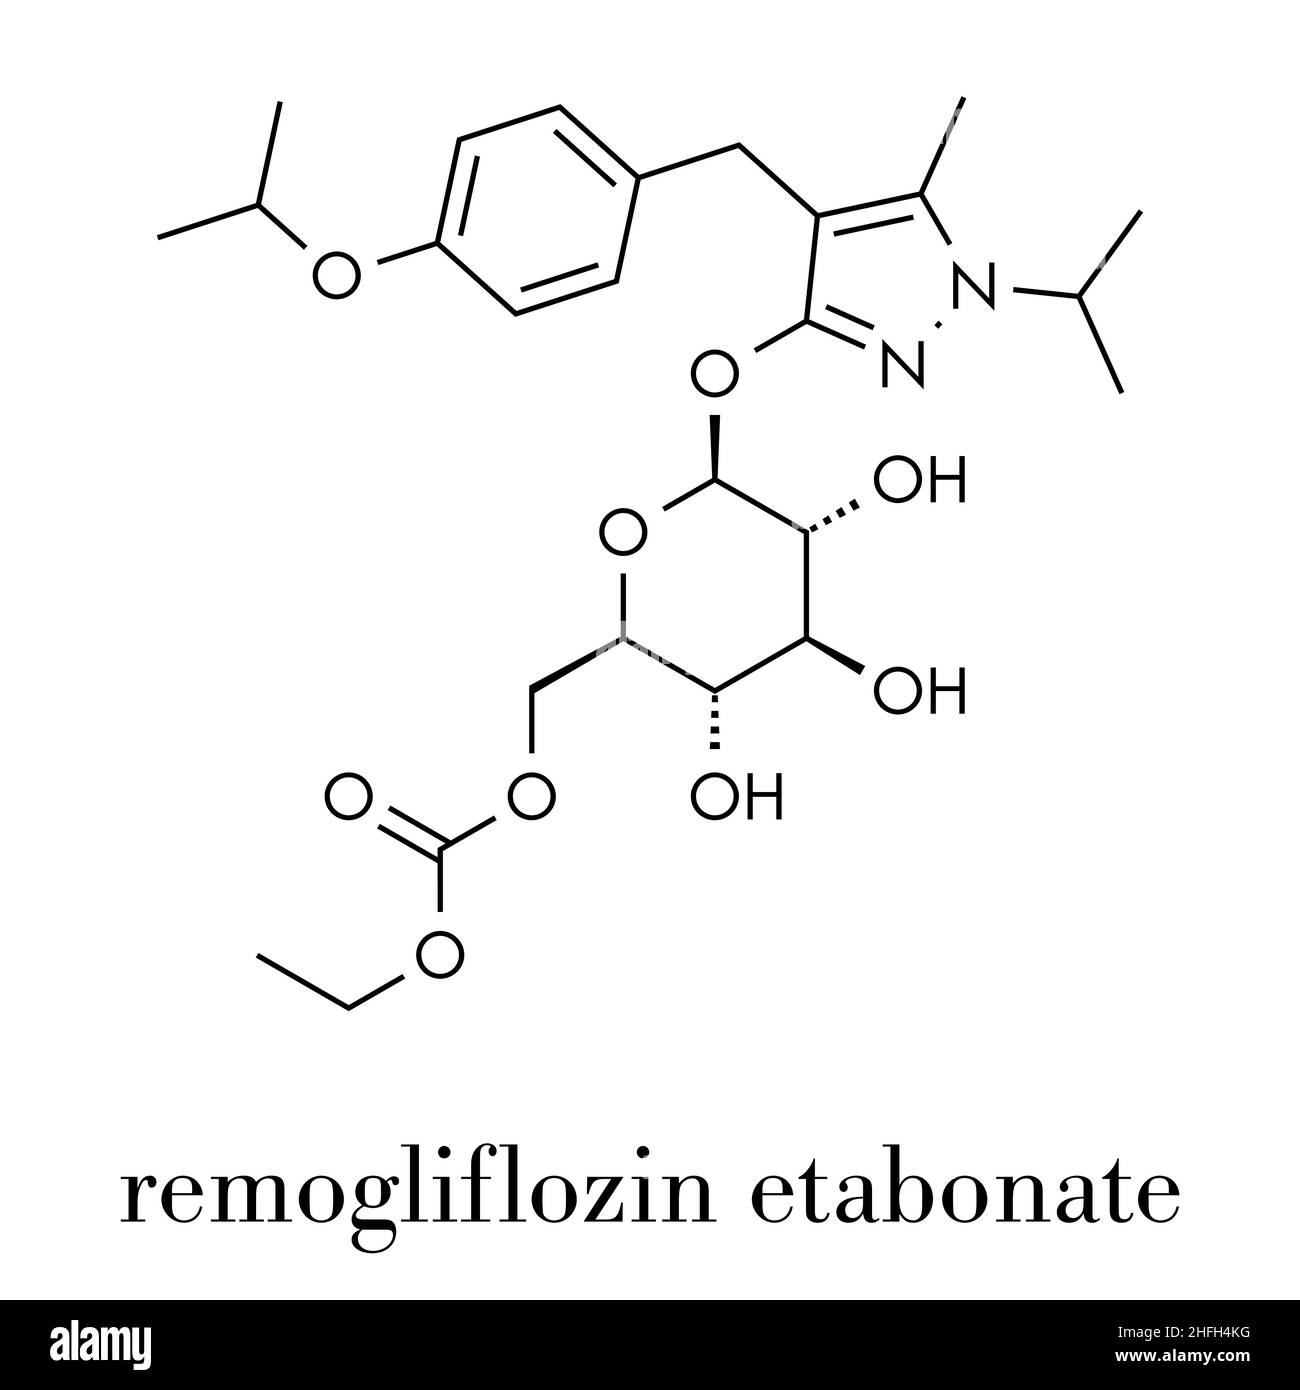 Remogliflozin etabonate drug molecule. Skeletal formula. Stock Vector